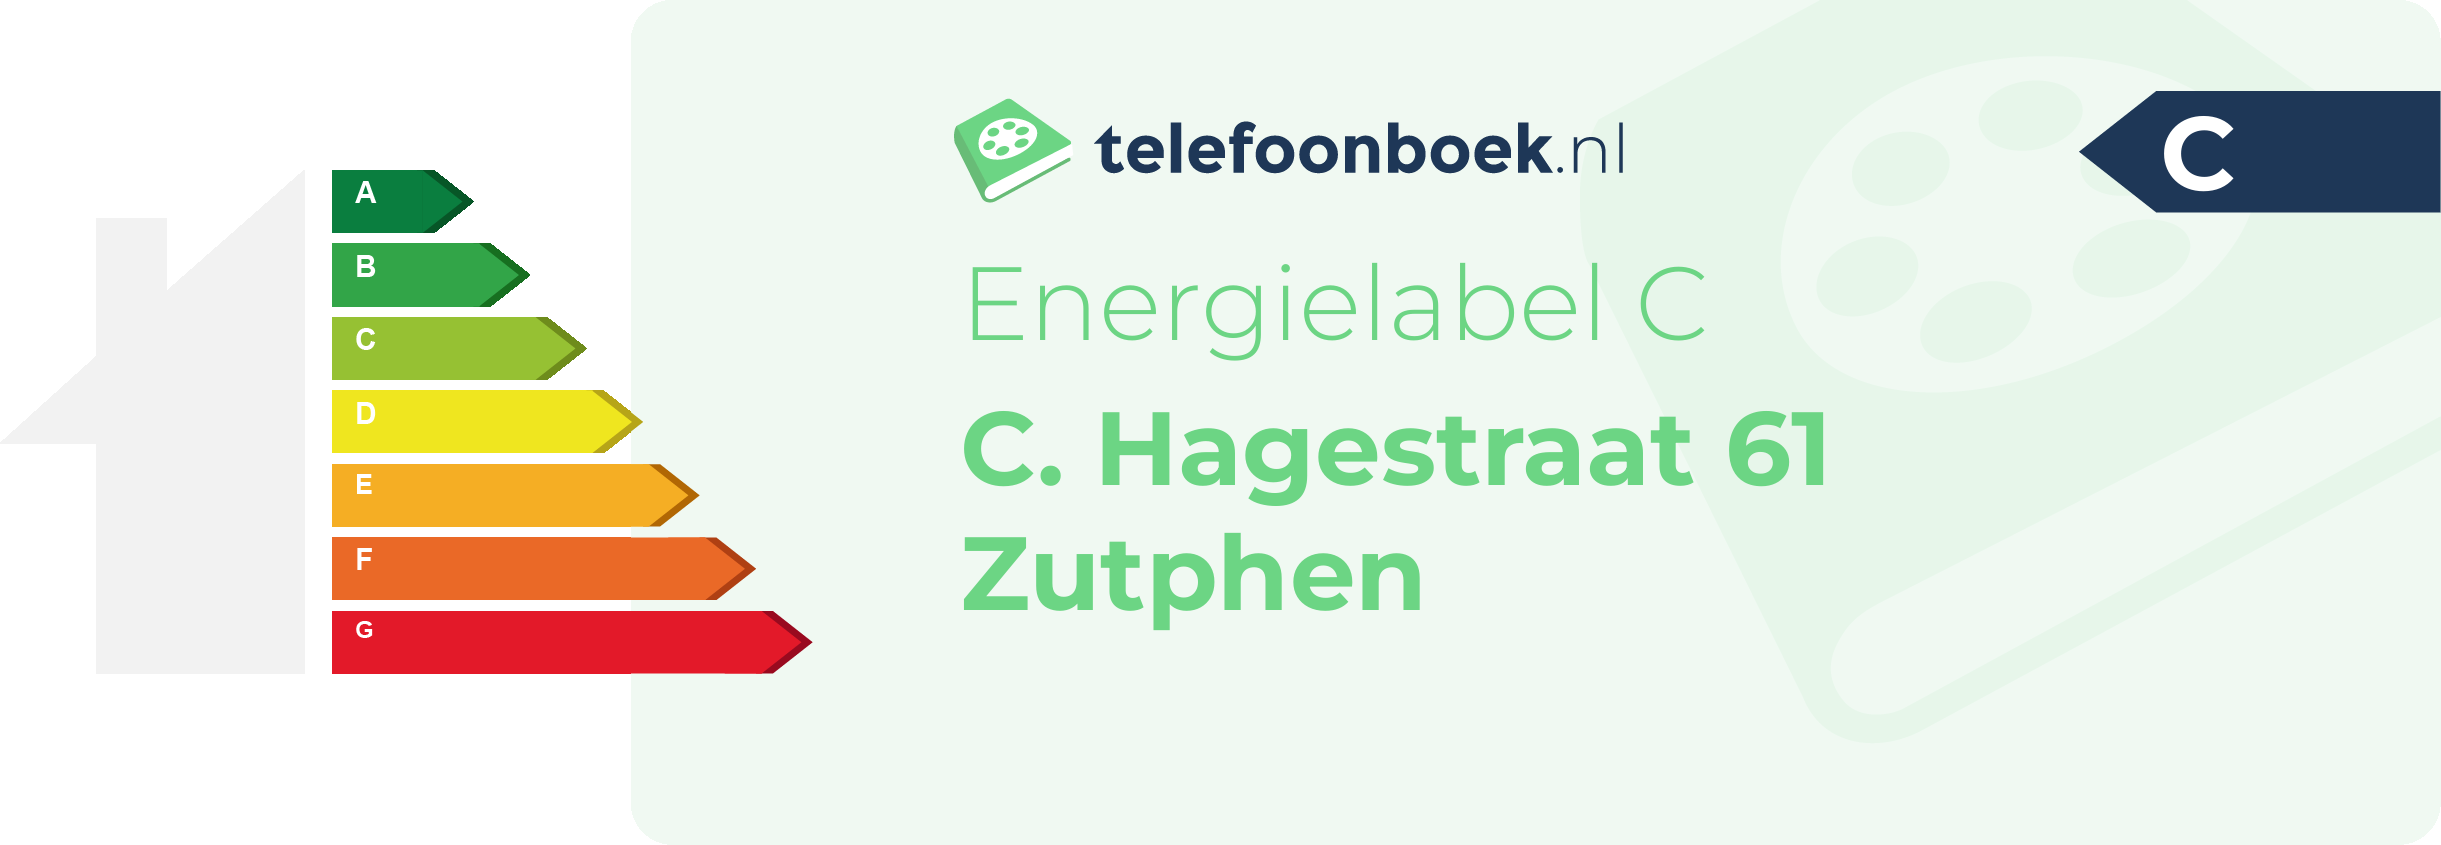 Energielabel C. Hagestraat 61 Zutphen